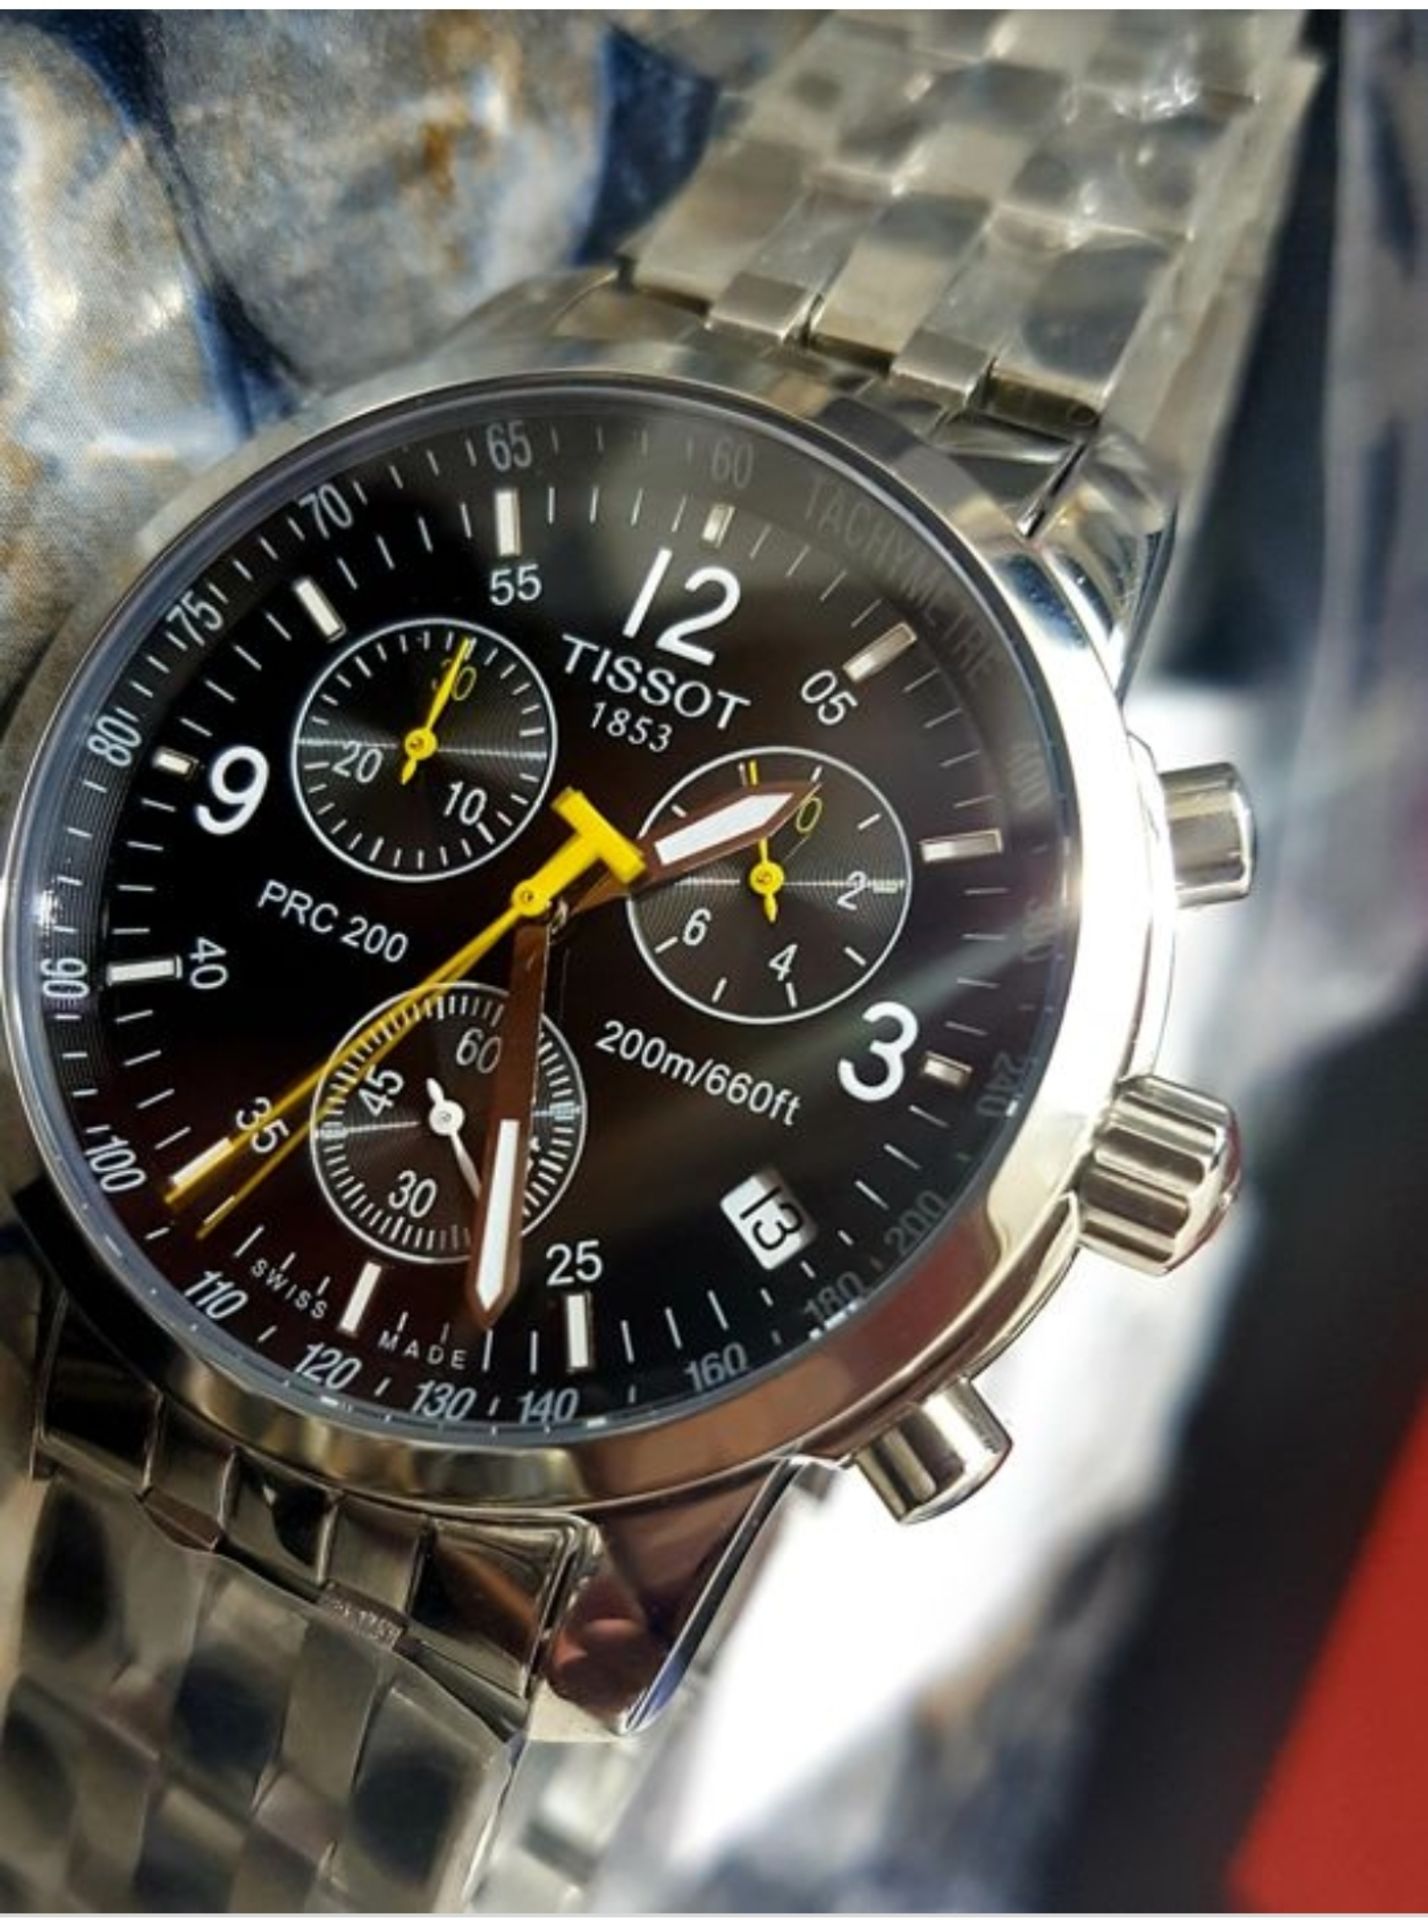 Tissot T17.1.586.52 PRC 200 Men's Chronograph Quartz Watch - Image 8 of 11